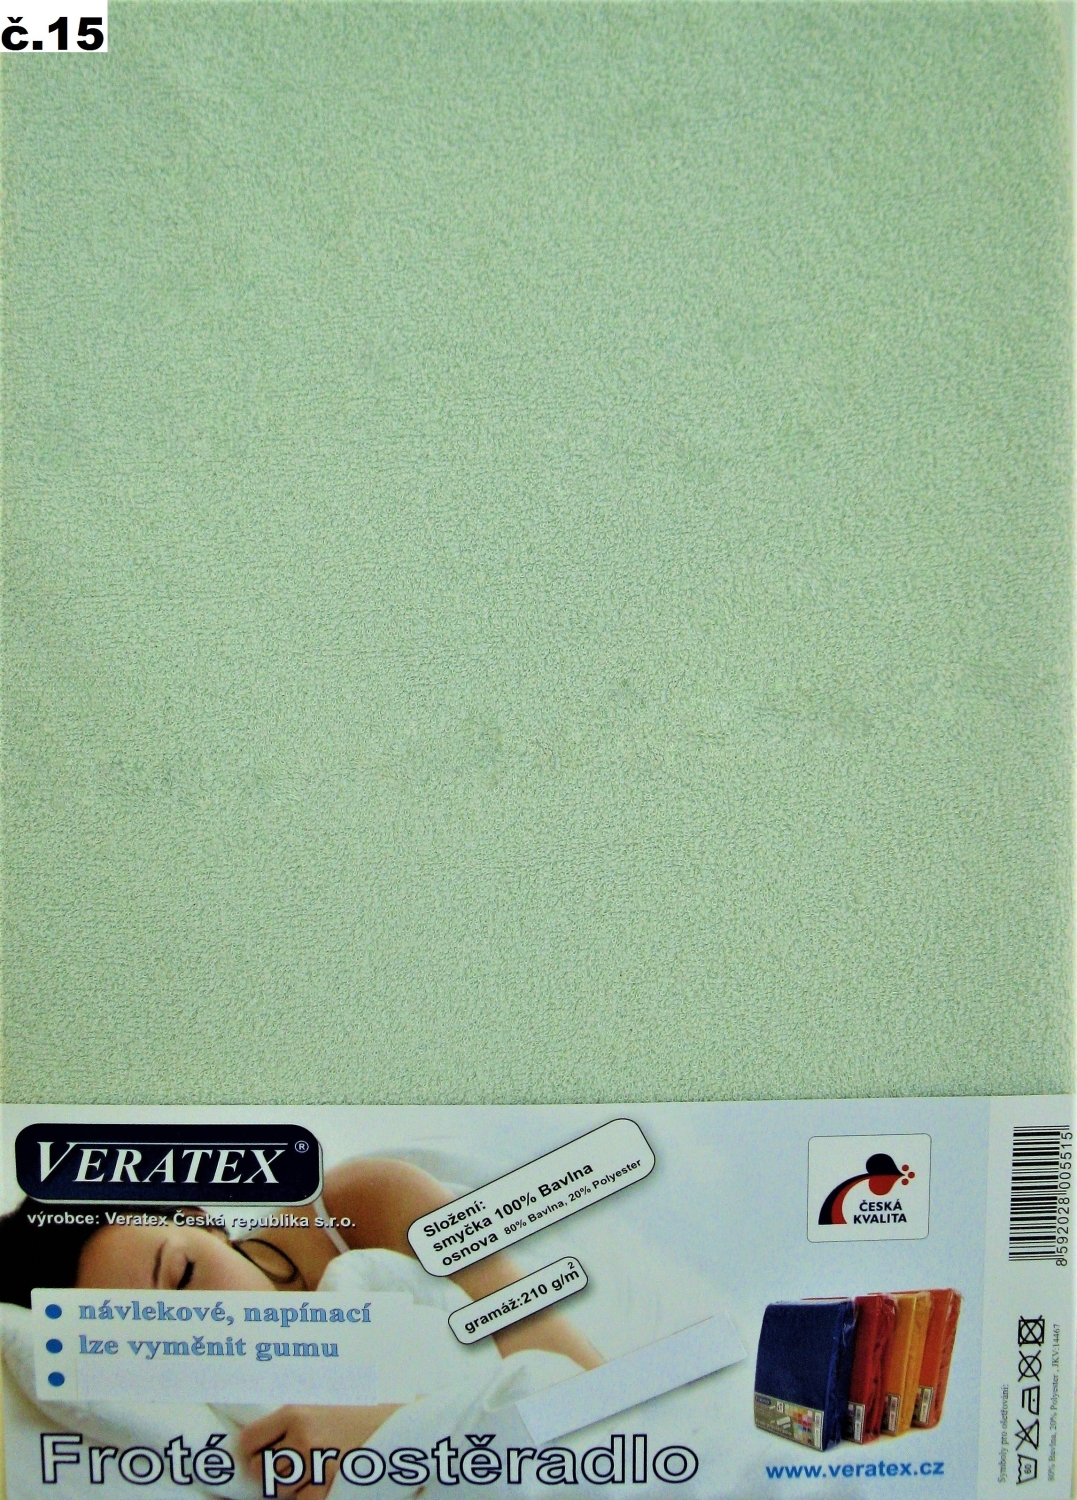 Veratex Froté prostěradlo jednolůžko 90x200/40cm (č.15 sv.zelené)